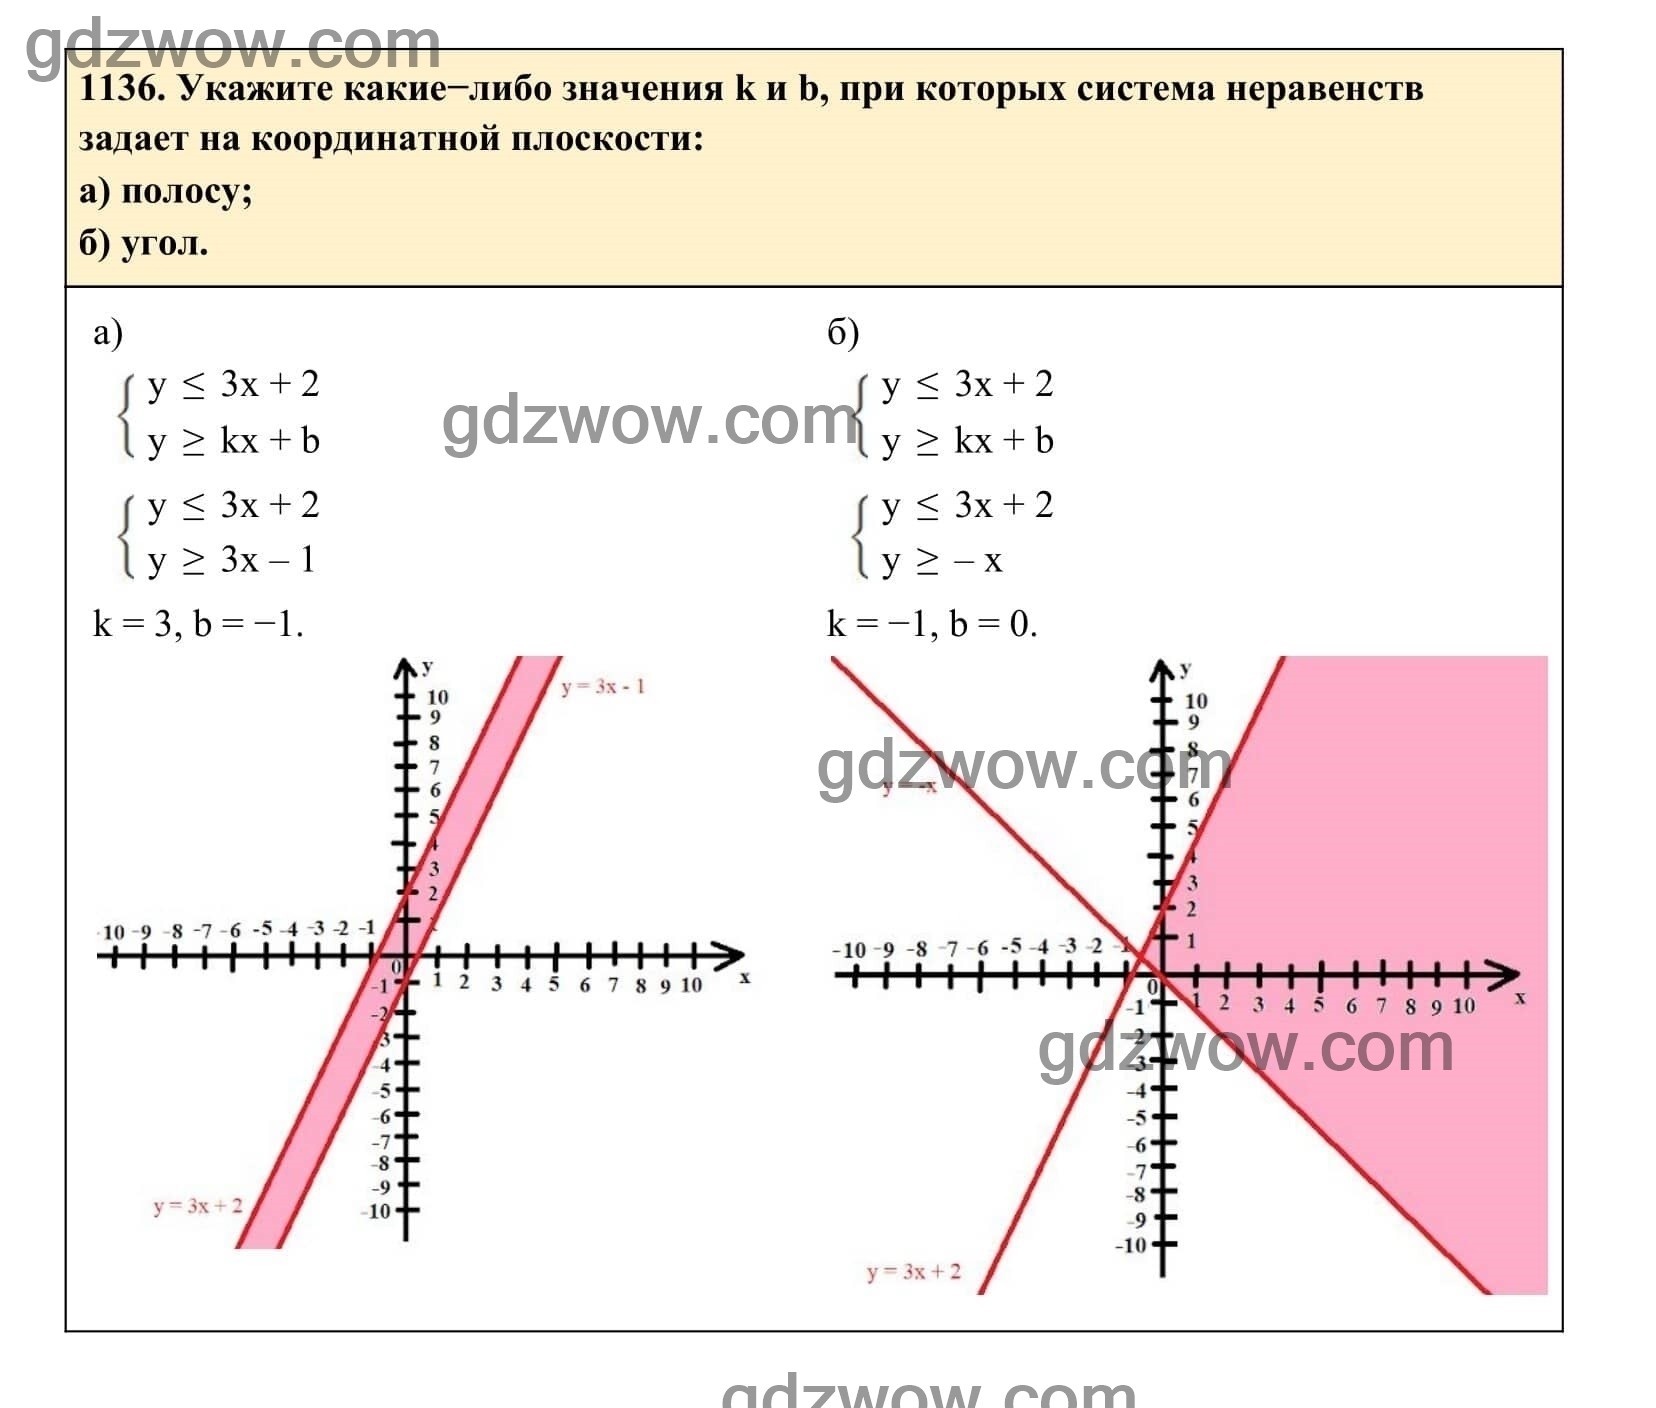 Упражнение 1136 - ГДЗ по Алгебре 7 класс Учебник Макарычев (решебник) - GDZwow